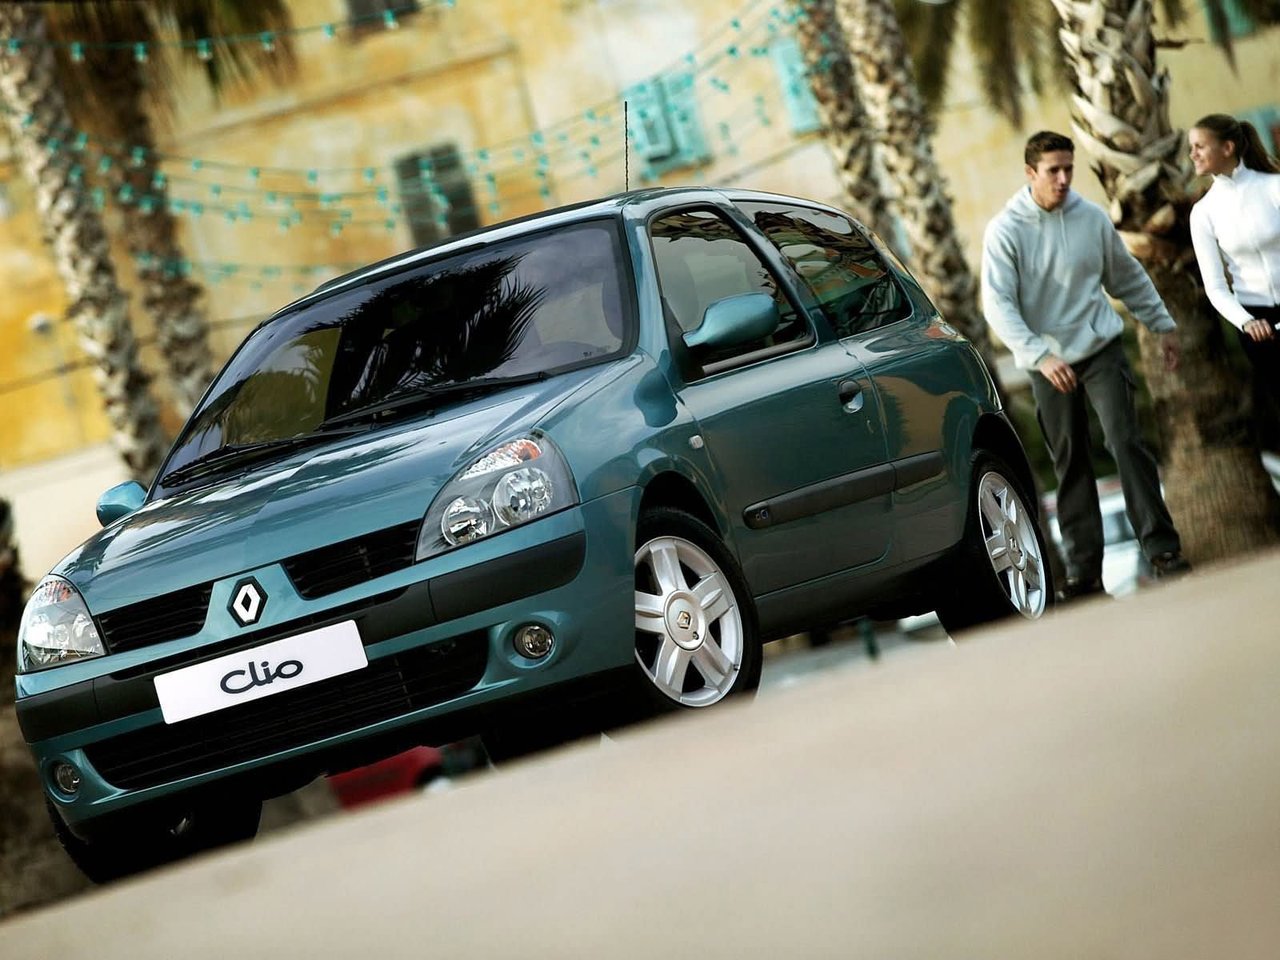 Расход газа трёх комплектаций хэтчбека три двери Renault Clio. Разница стоимости заправки газом и бензином. Автономный пробег до и после установки ГБО.